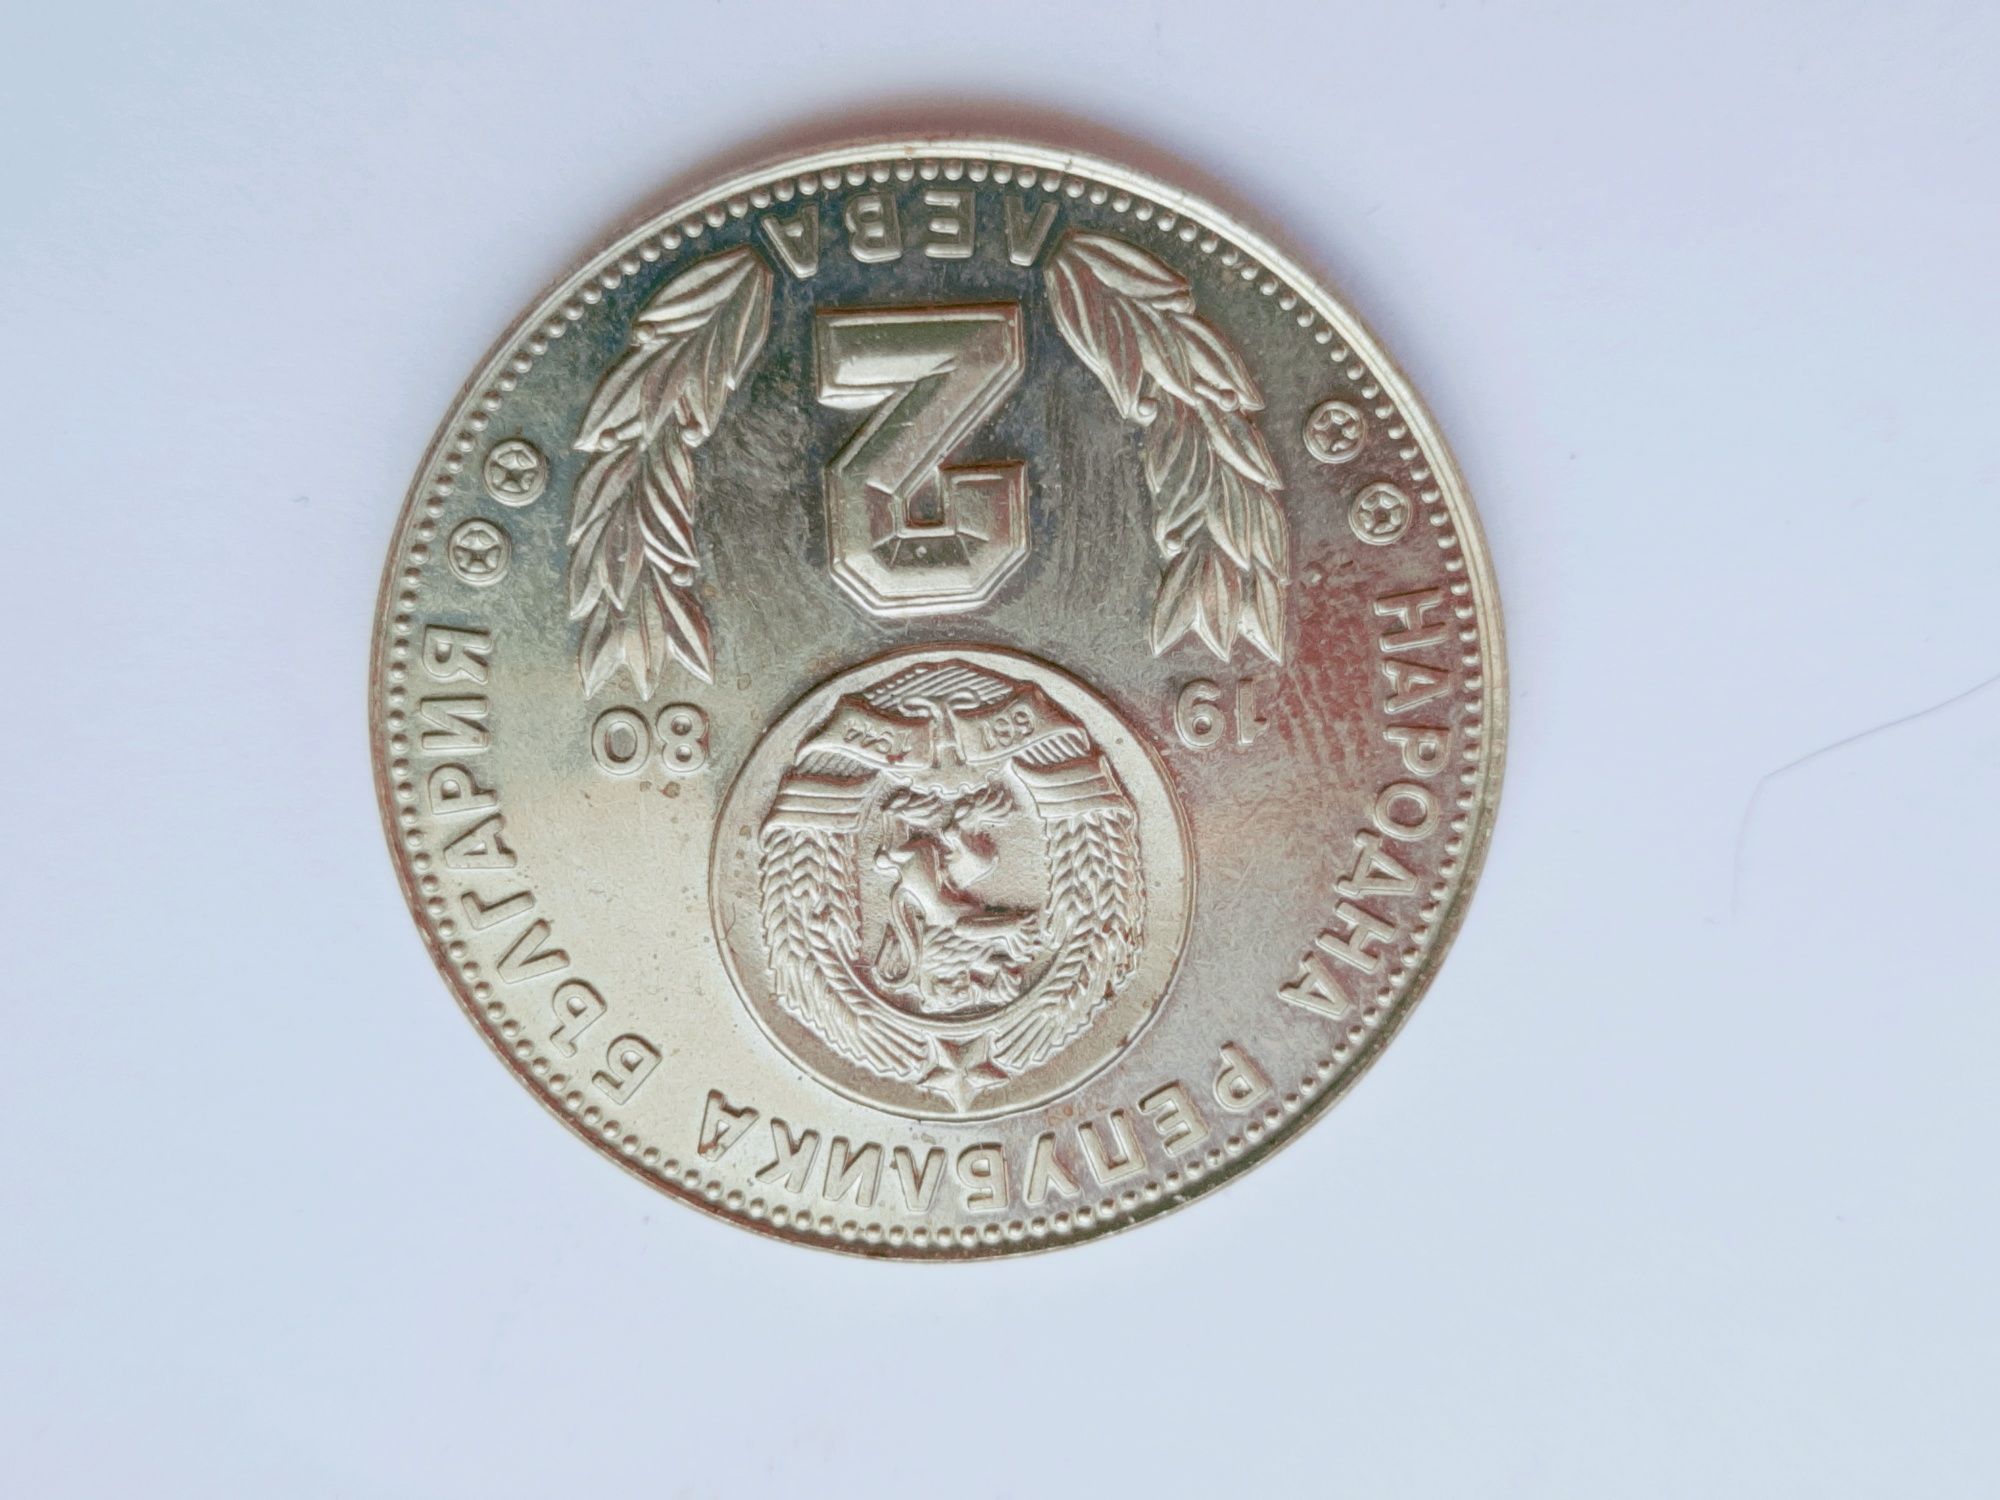 Български юбилейни монети